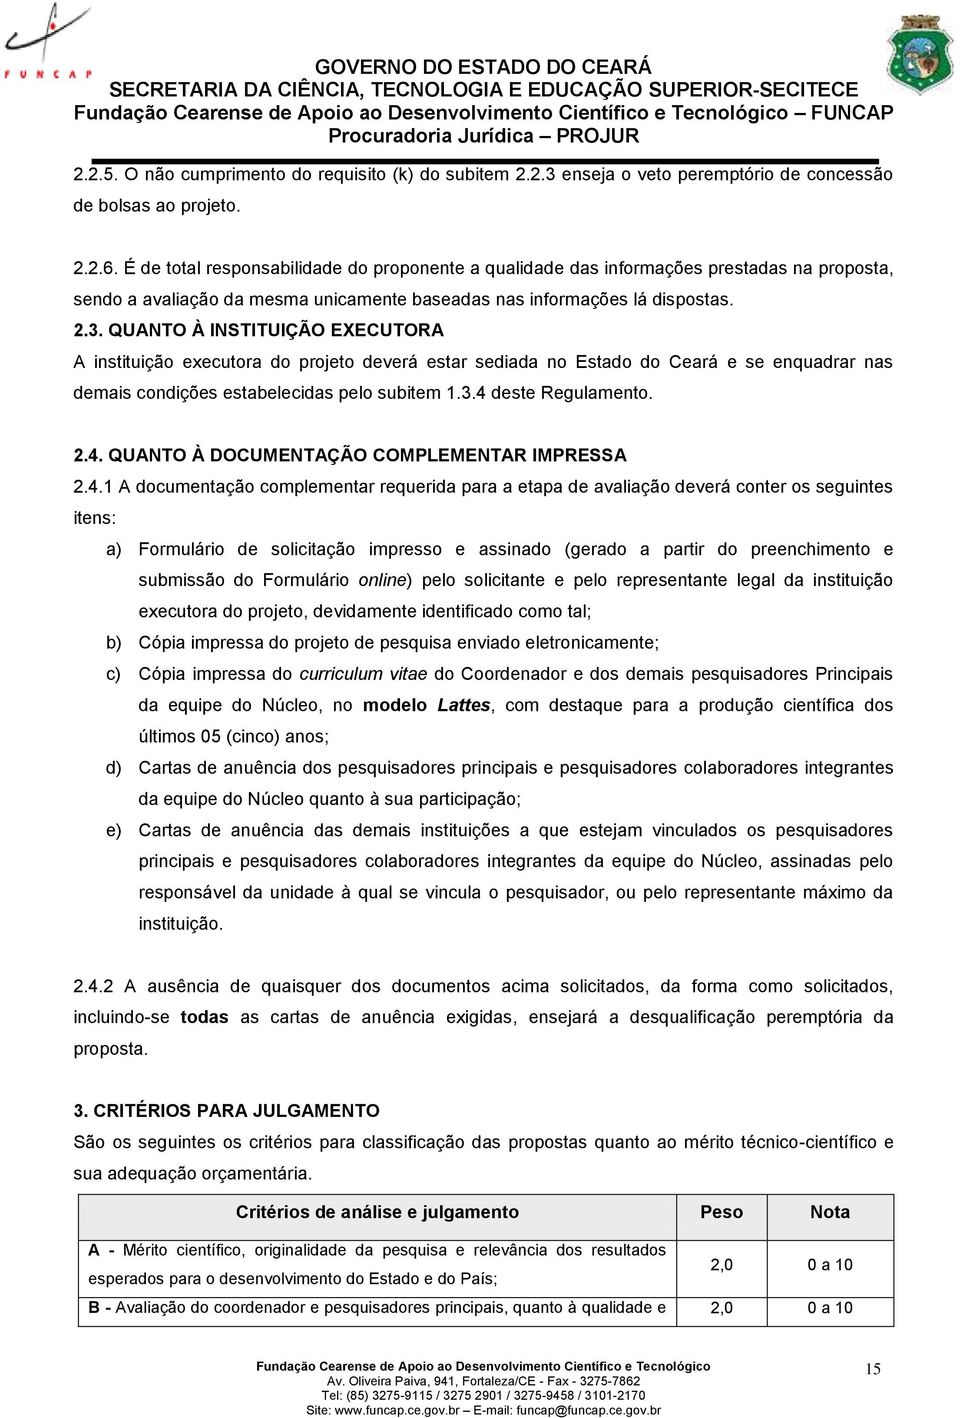 QUANTO À INSTITUIÇÃO EXECUTORA A instituição executora do projeto deverá estar sediada no Estado do Ceará e se enquadrar nas demais condições estabelecidas pelo subitem 1.3.4 